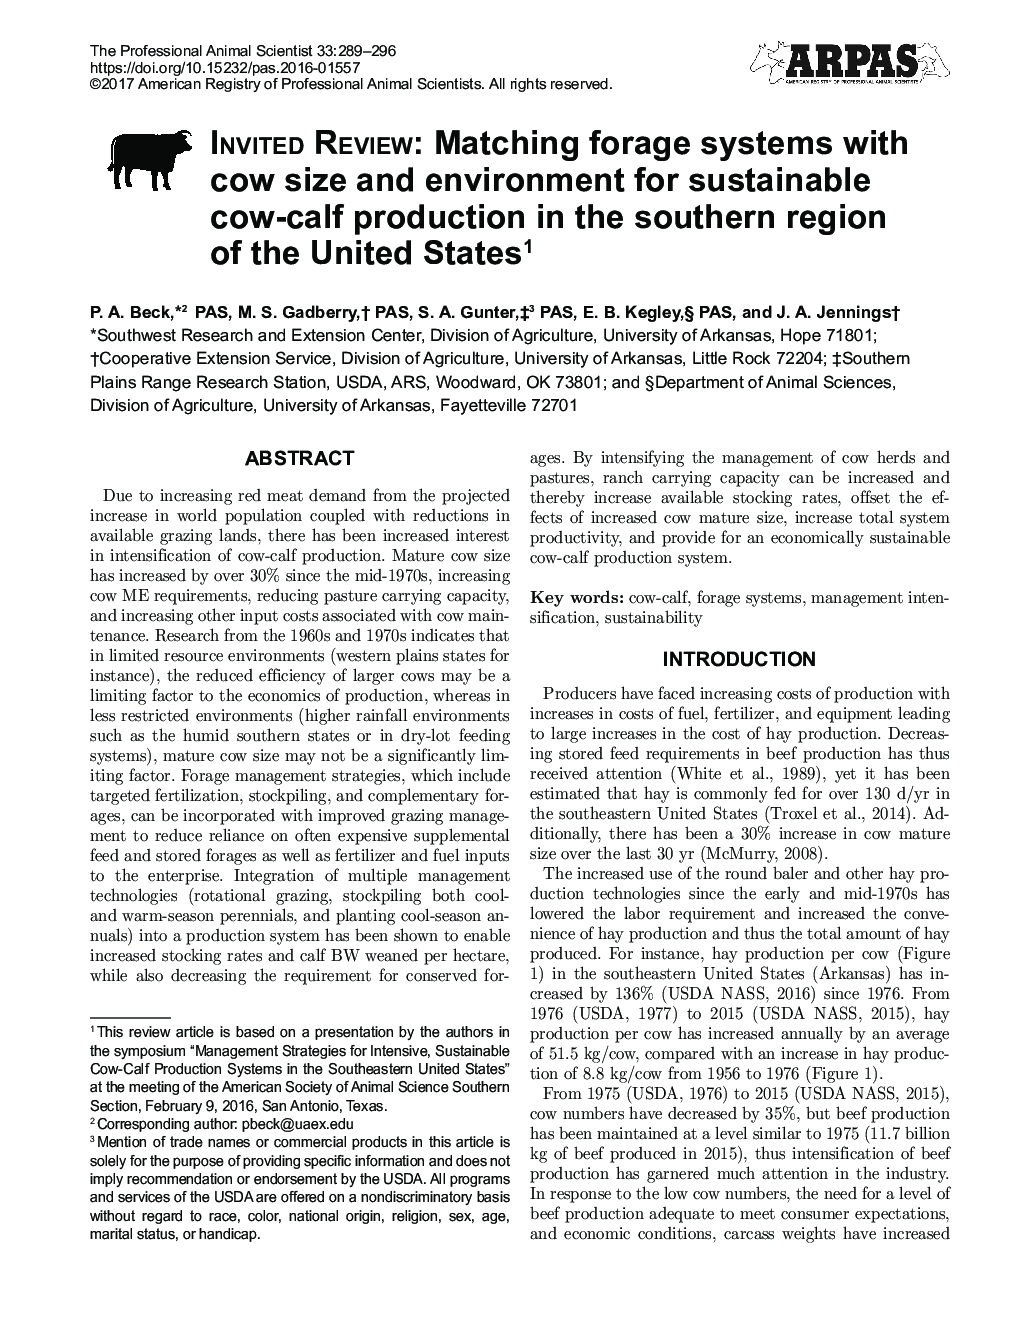 تجدید نظر شده: تطبیق سیستم های علوفه ای با اندازه گاو و محیط زیست برای تولید پایدار گوساله در منطقه جنوب ایالات متحده1 